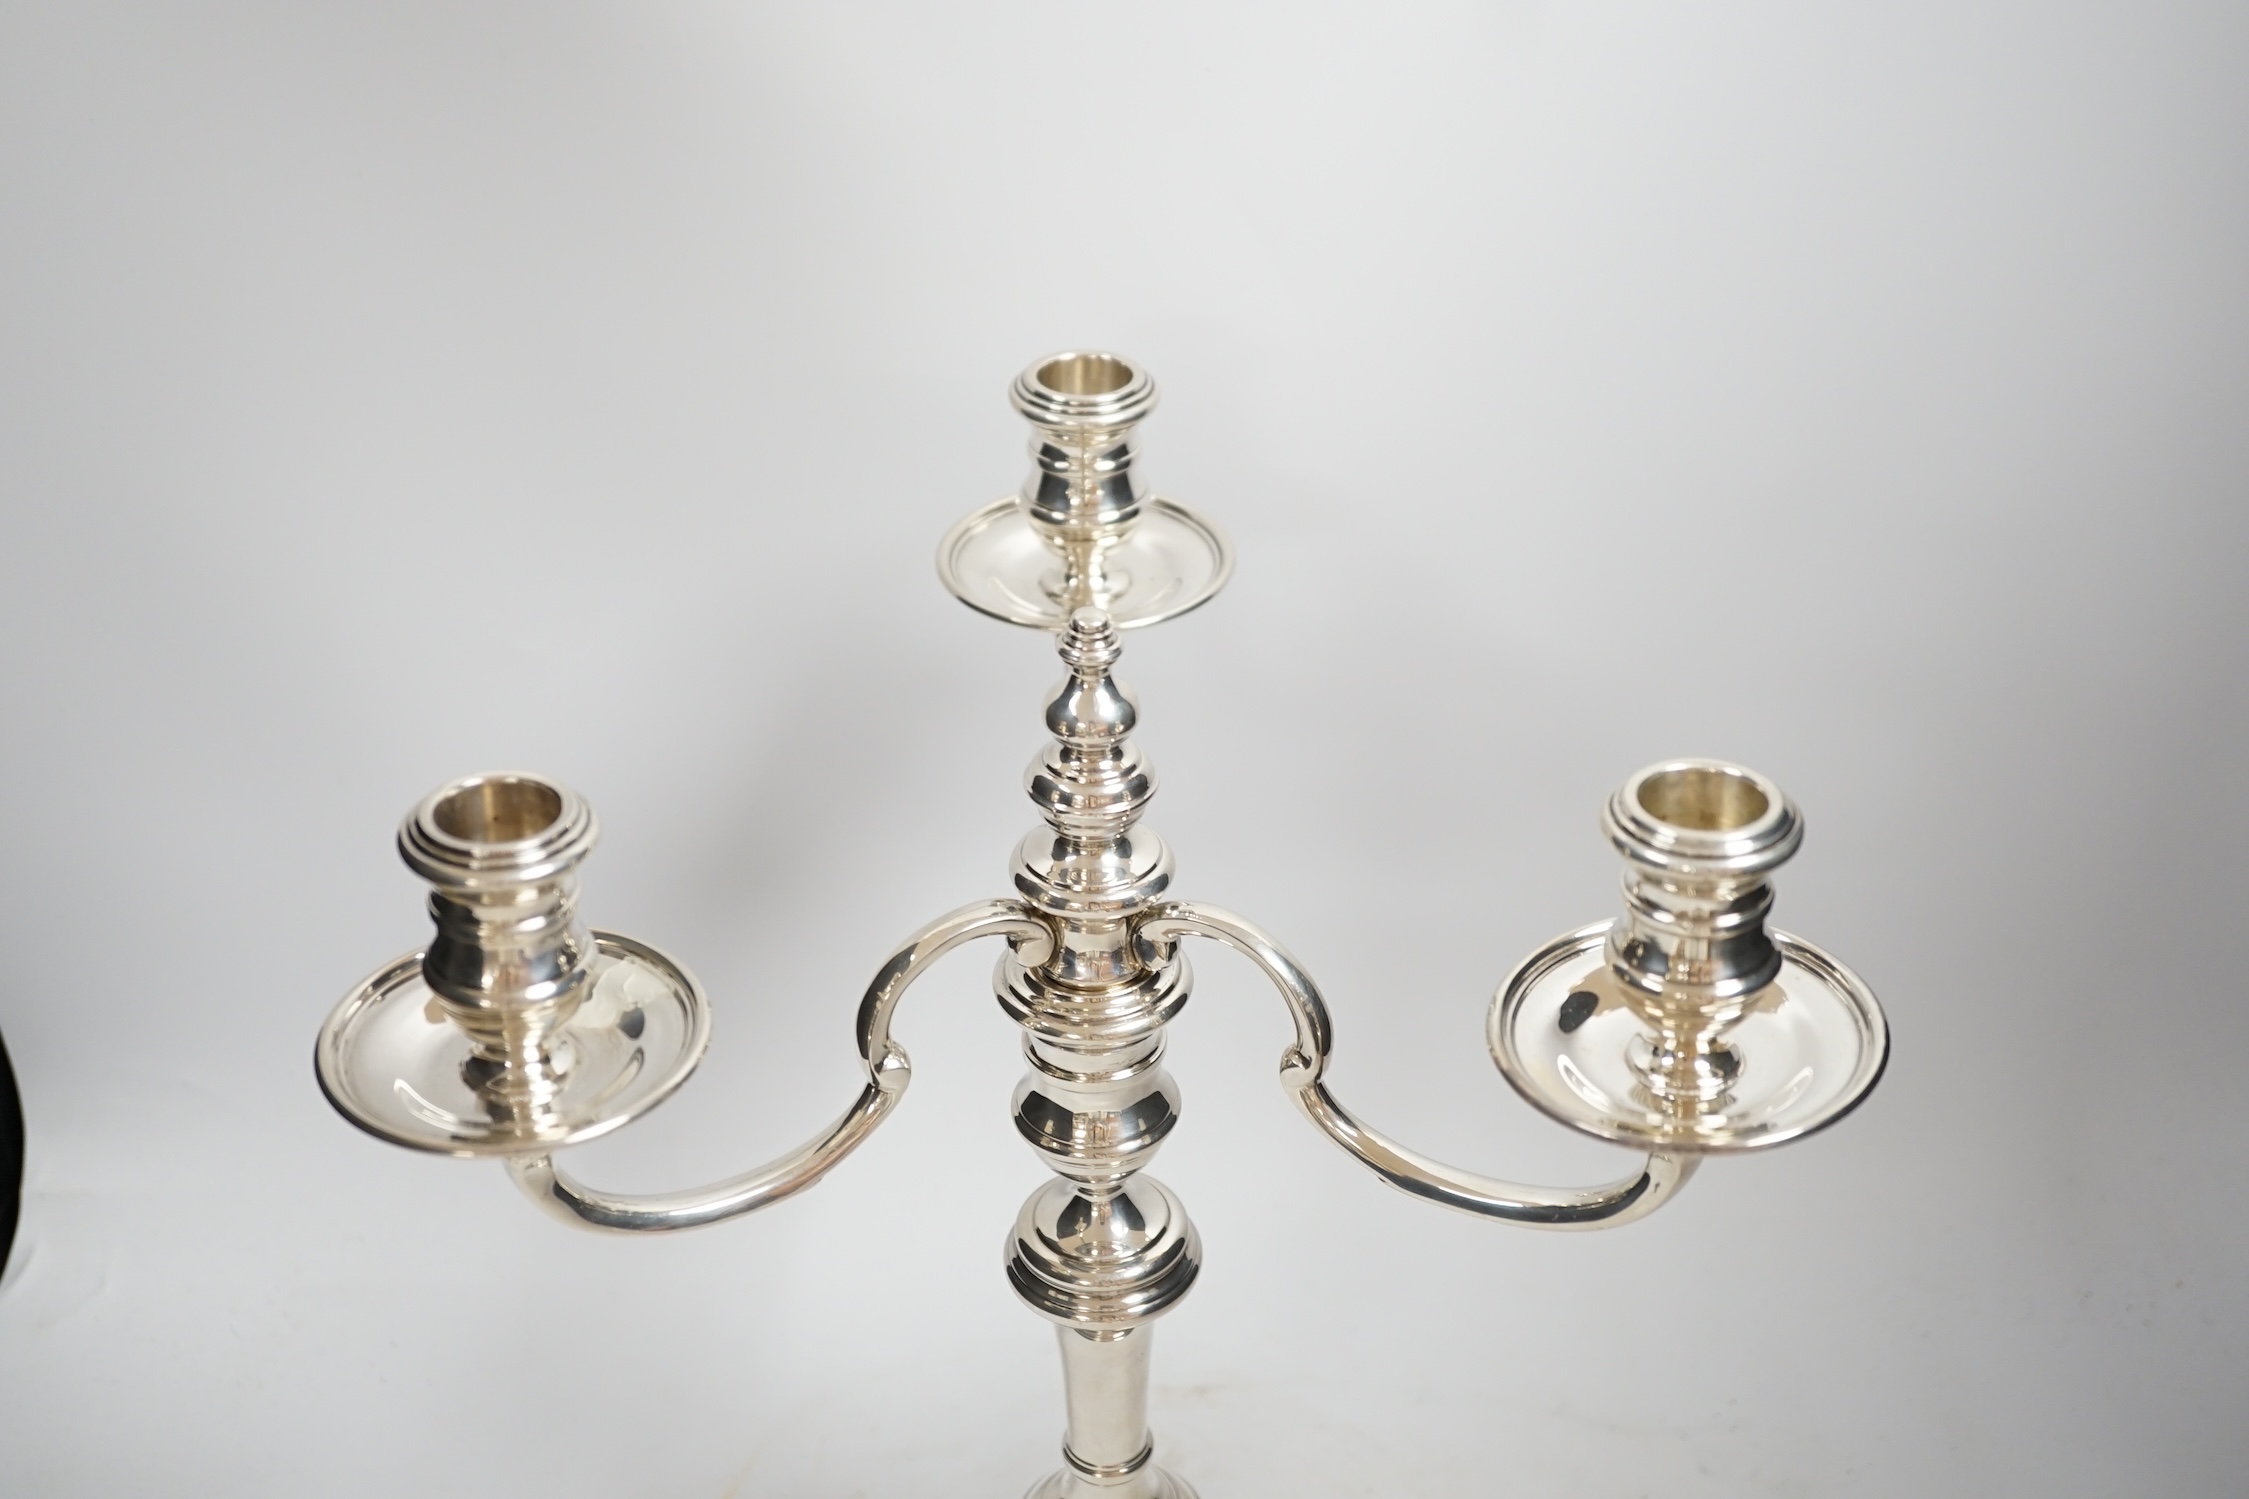 An Elizabeth II silver three branch, three light candelabrum, by William Comyns & Sons Ltd, London, 1965, height 34cm, weighable silver 16oz.